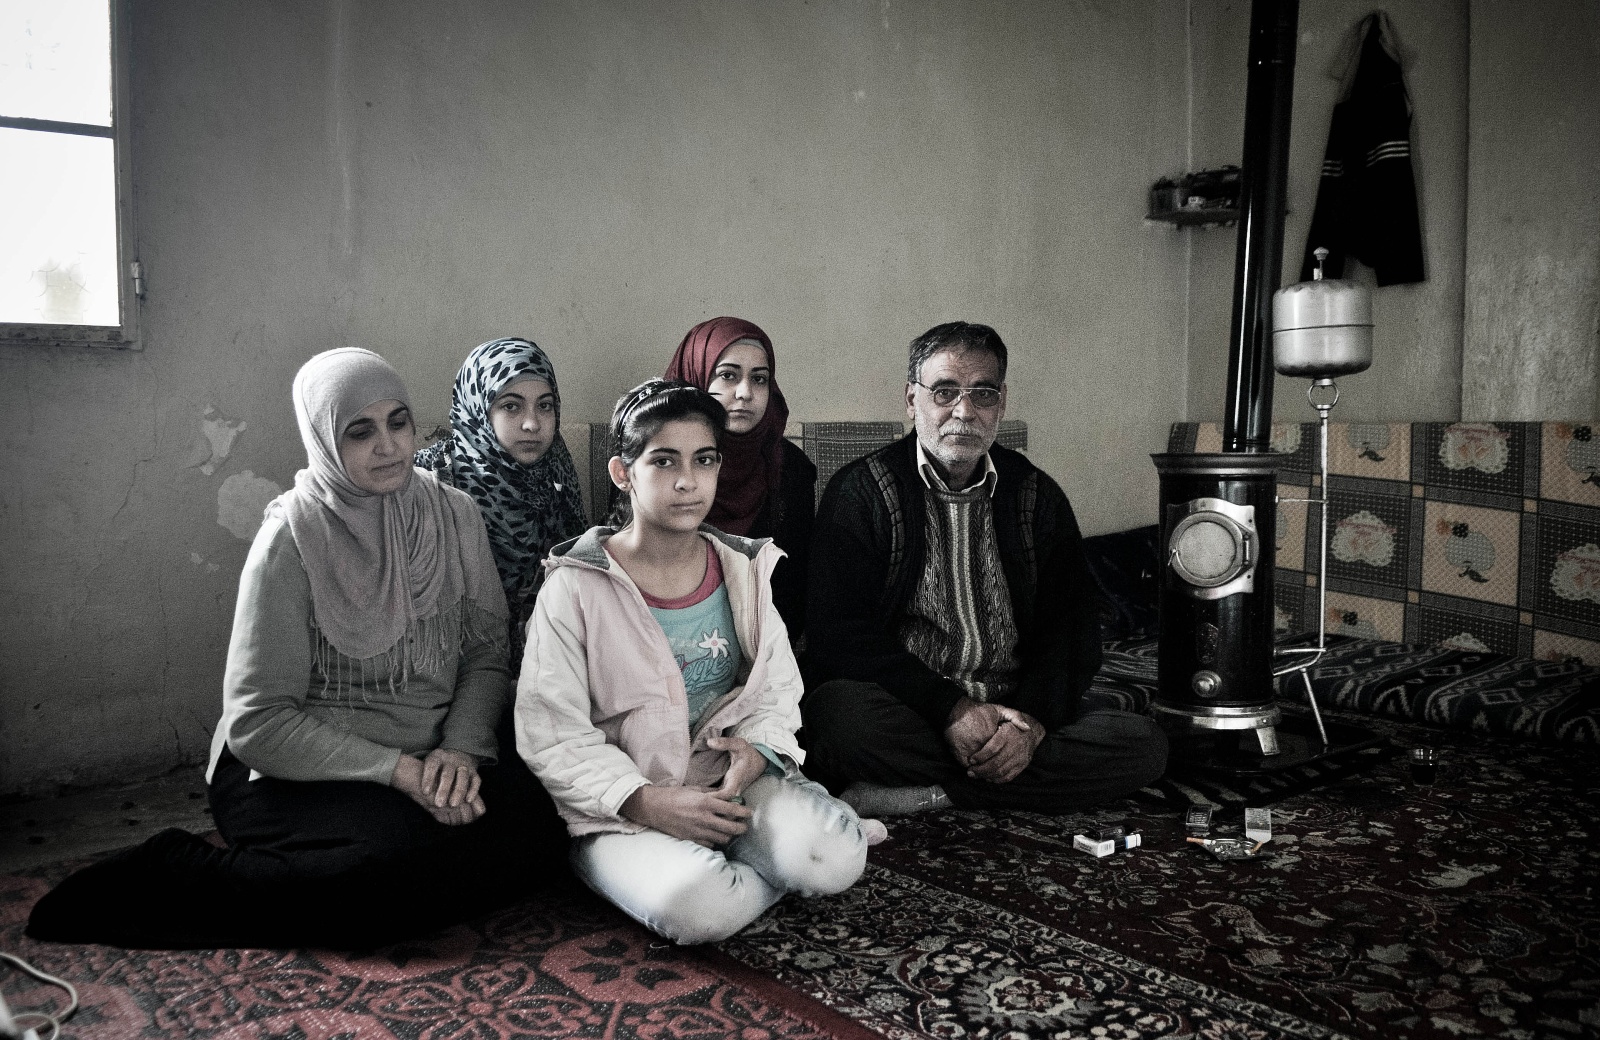 Aarsal - La famiglia di Najad.
Najad ha 24 anni e viene da Homs, una delle città più martoriate dalla guerra siriana.
Quando il padre ha preso la decisione di lasciare la città, e di recarsi ad Arsaal per sfuggire alla guerra, le ha raccomandato di non prendere troppa roba con sé, " Si tratterà di un mese o due, ritorneremo presto a casa".
Questo succedeva nel gennaio del 2012, e dopo un anno la famiglia di Najad si trova ancora in Libano, nella stessa casetta fatta di due stanze e un bagnetto fuori dal cortile. 